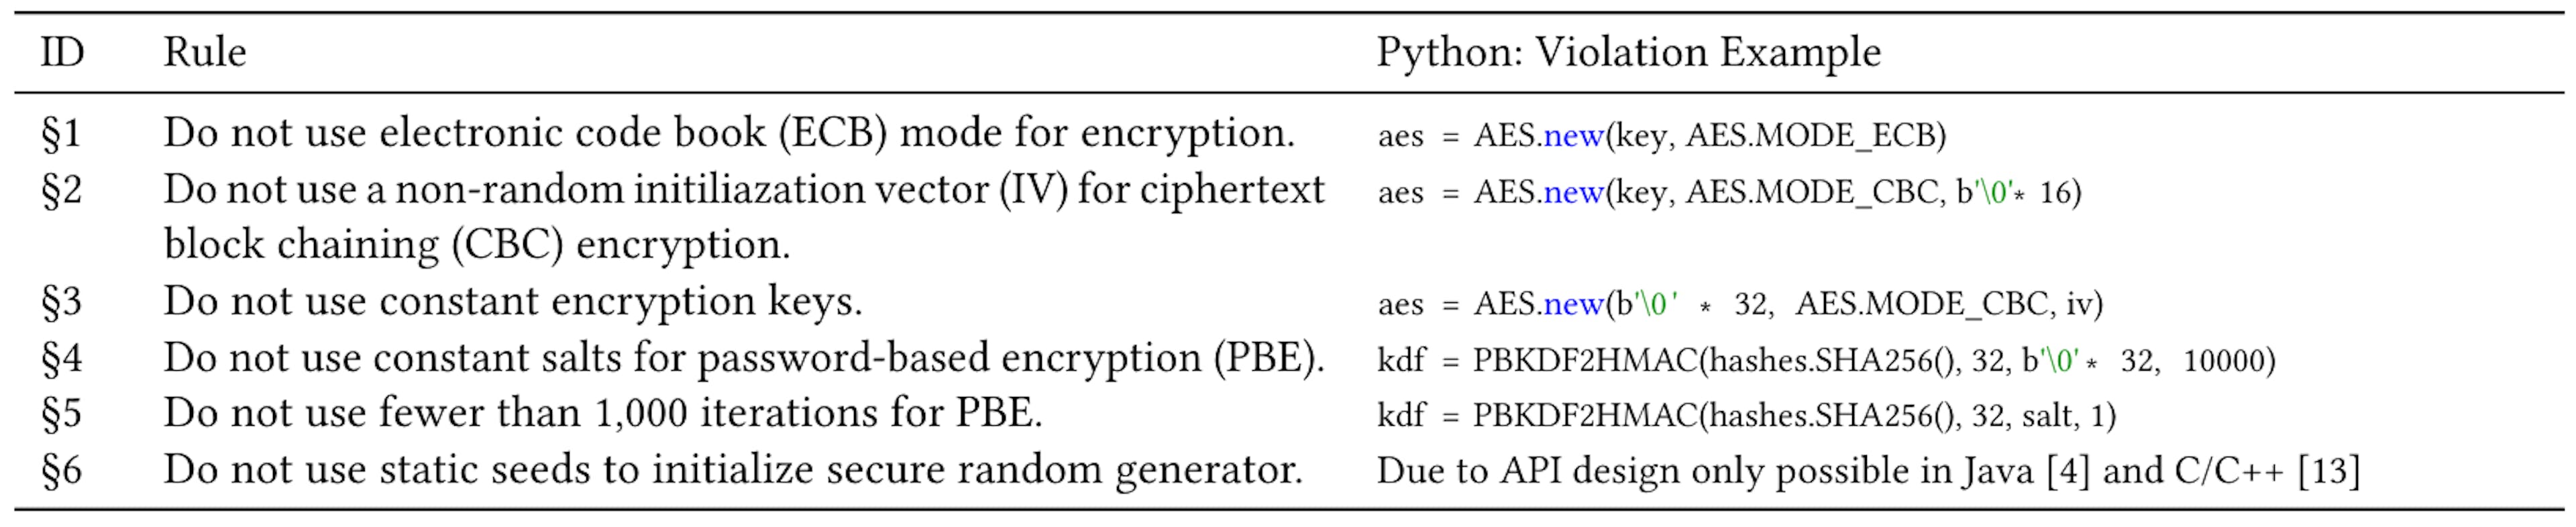 Tablo 1: Java ve C'de yaygın olarak tartışılan altı kripto kötüye kullanımı [4, 13] ve Python'daki bir ihlal örneği.